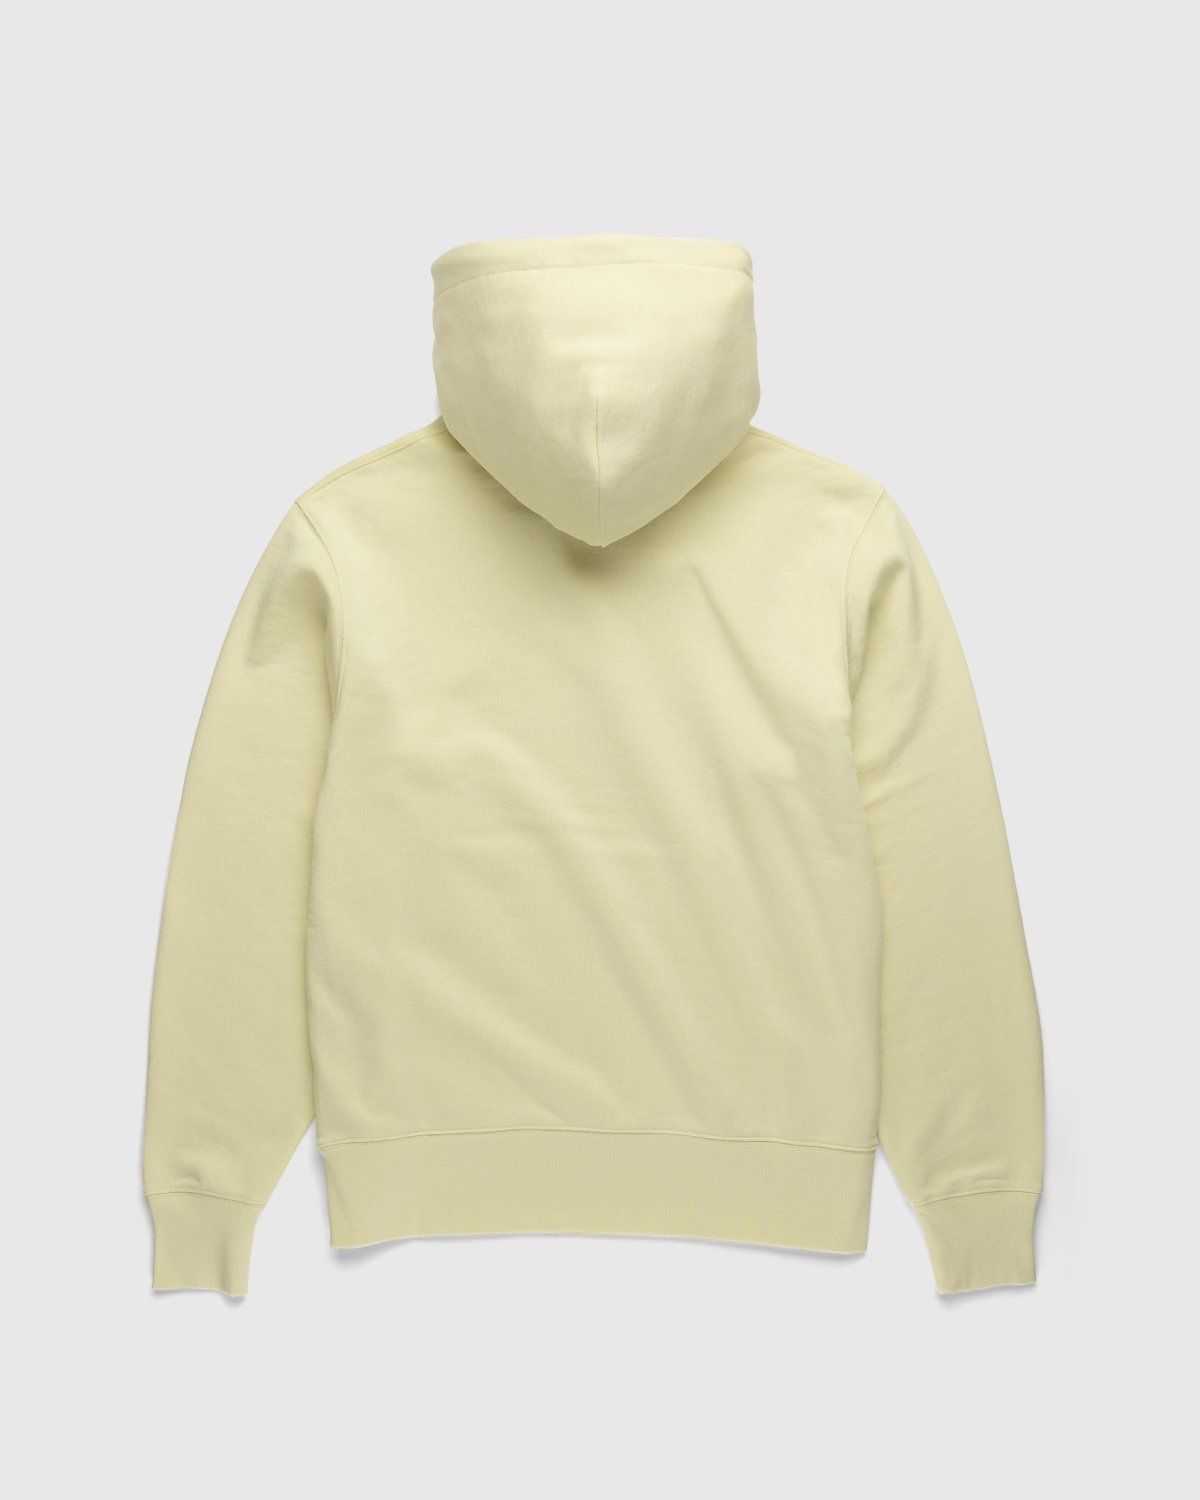 Acne Studios – Organic Cotton Hooded Sweatshirt Vanilla Yellow - Sweats - Yellow - Image 2